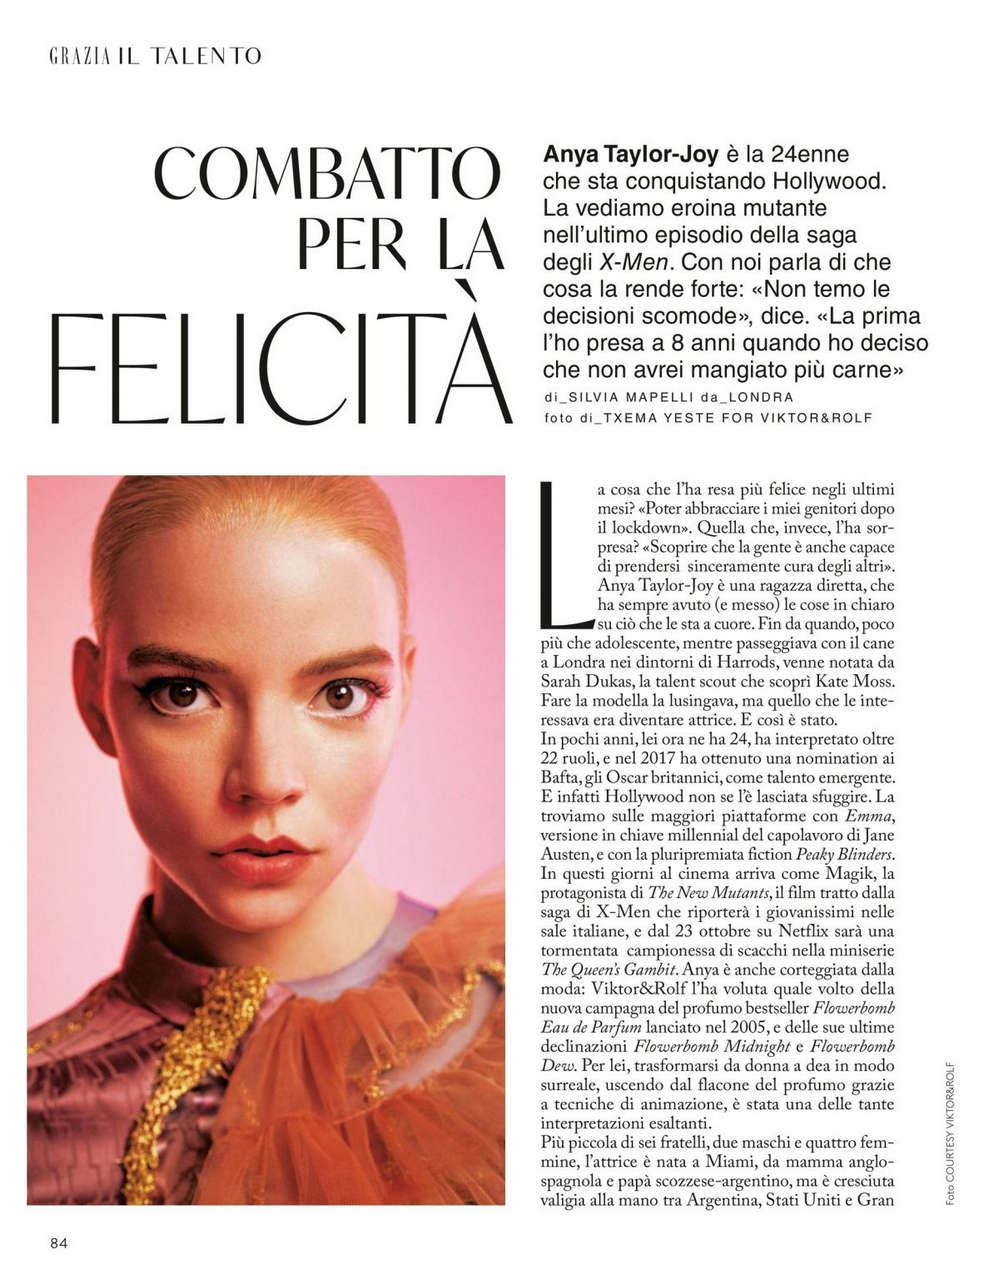 Anya Taylor Joy Grazia Magazine Italy September